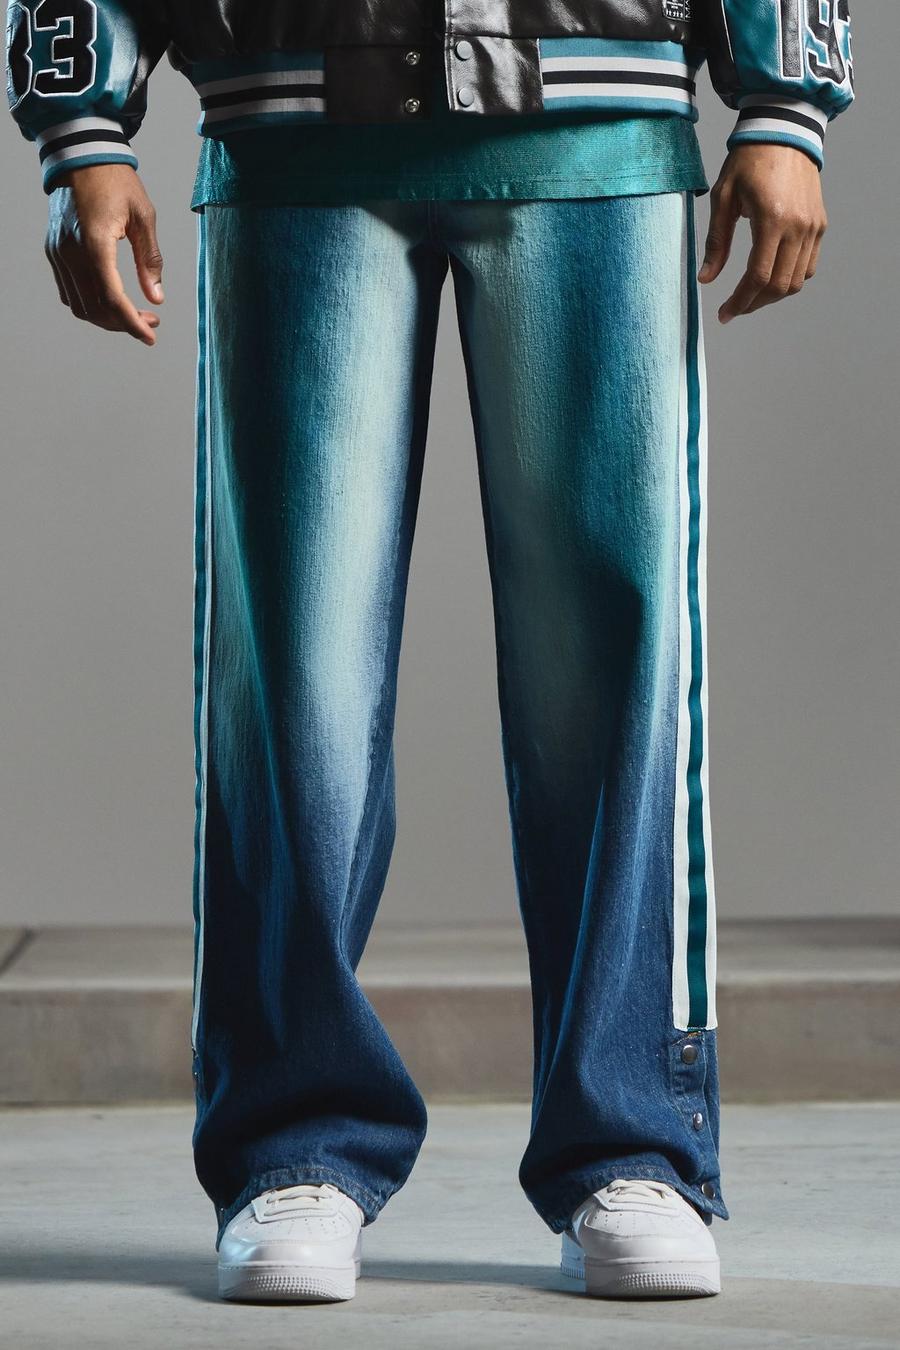 Jeans NFL extra comodi in denim rigido con bottoni a pressione e fondo colorato, Antique blue